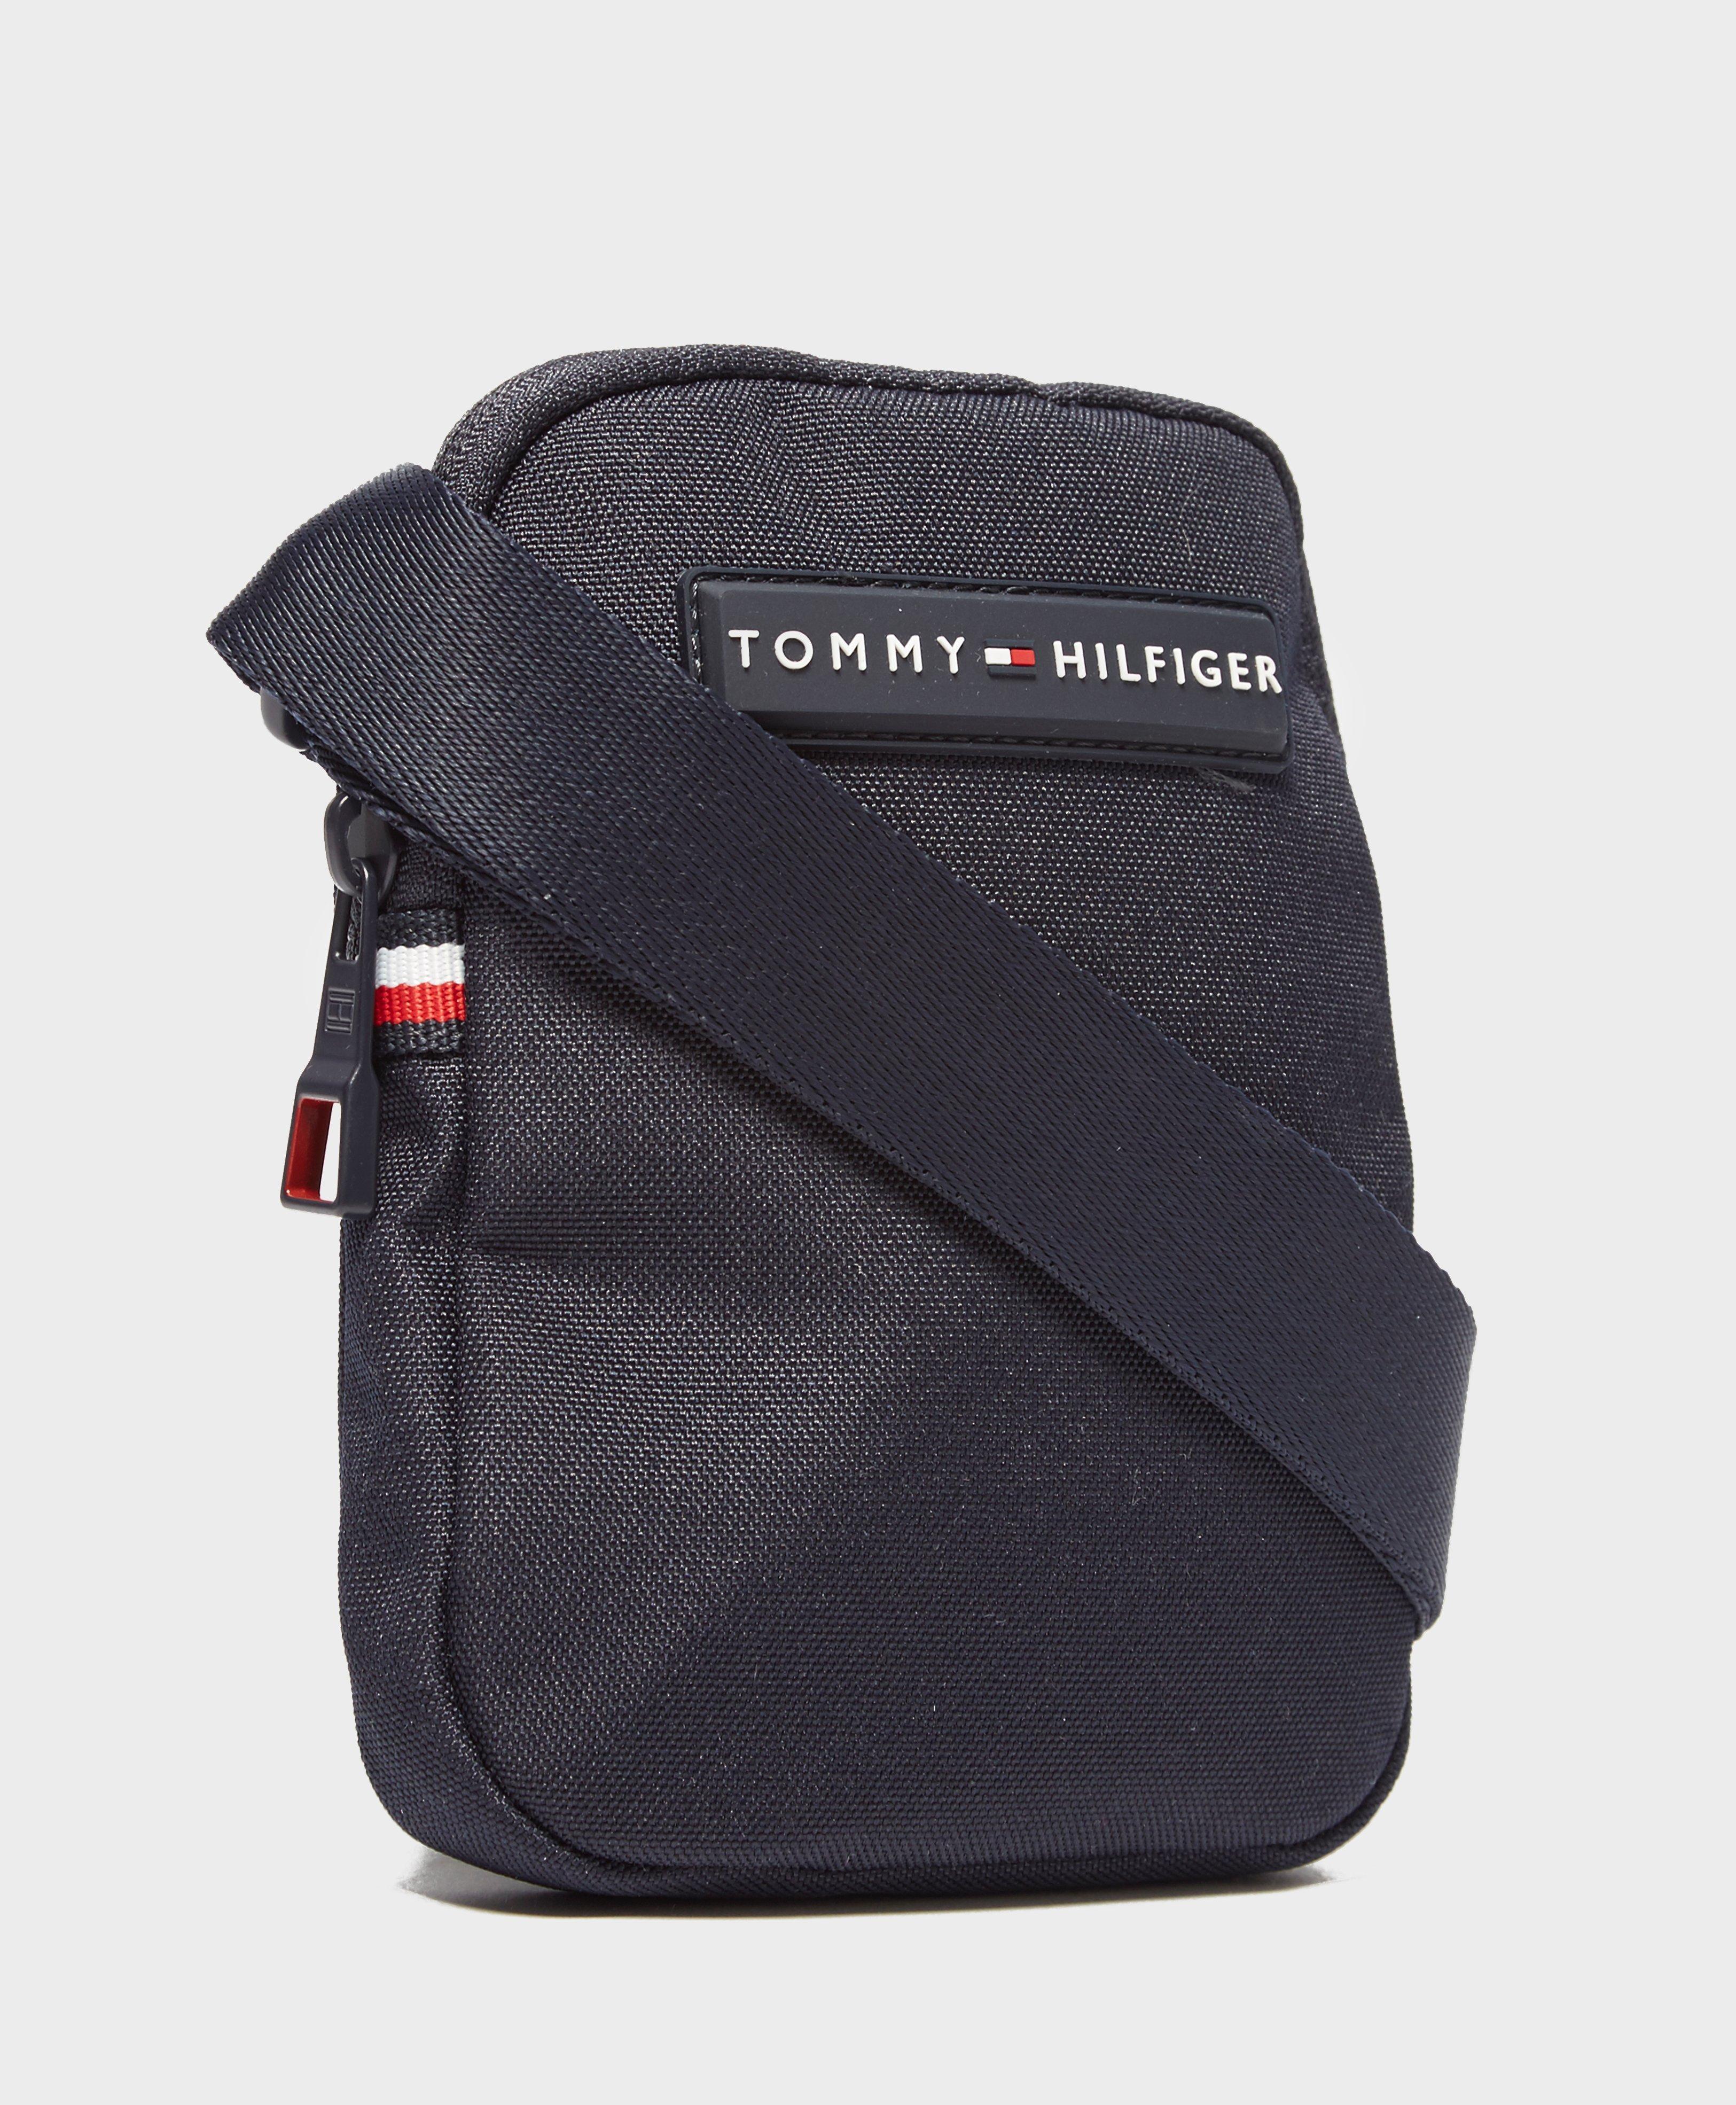 tommy hilfiger festival bag